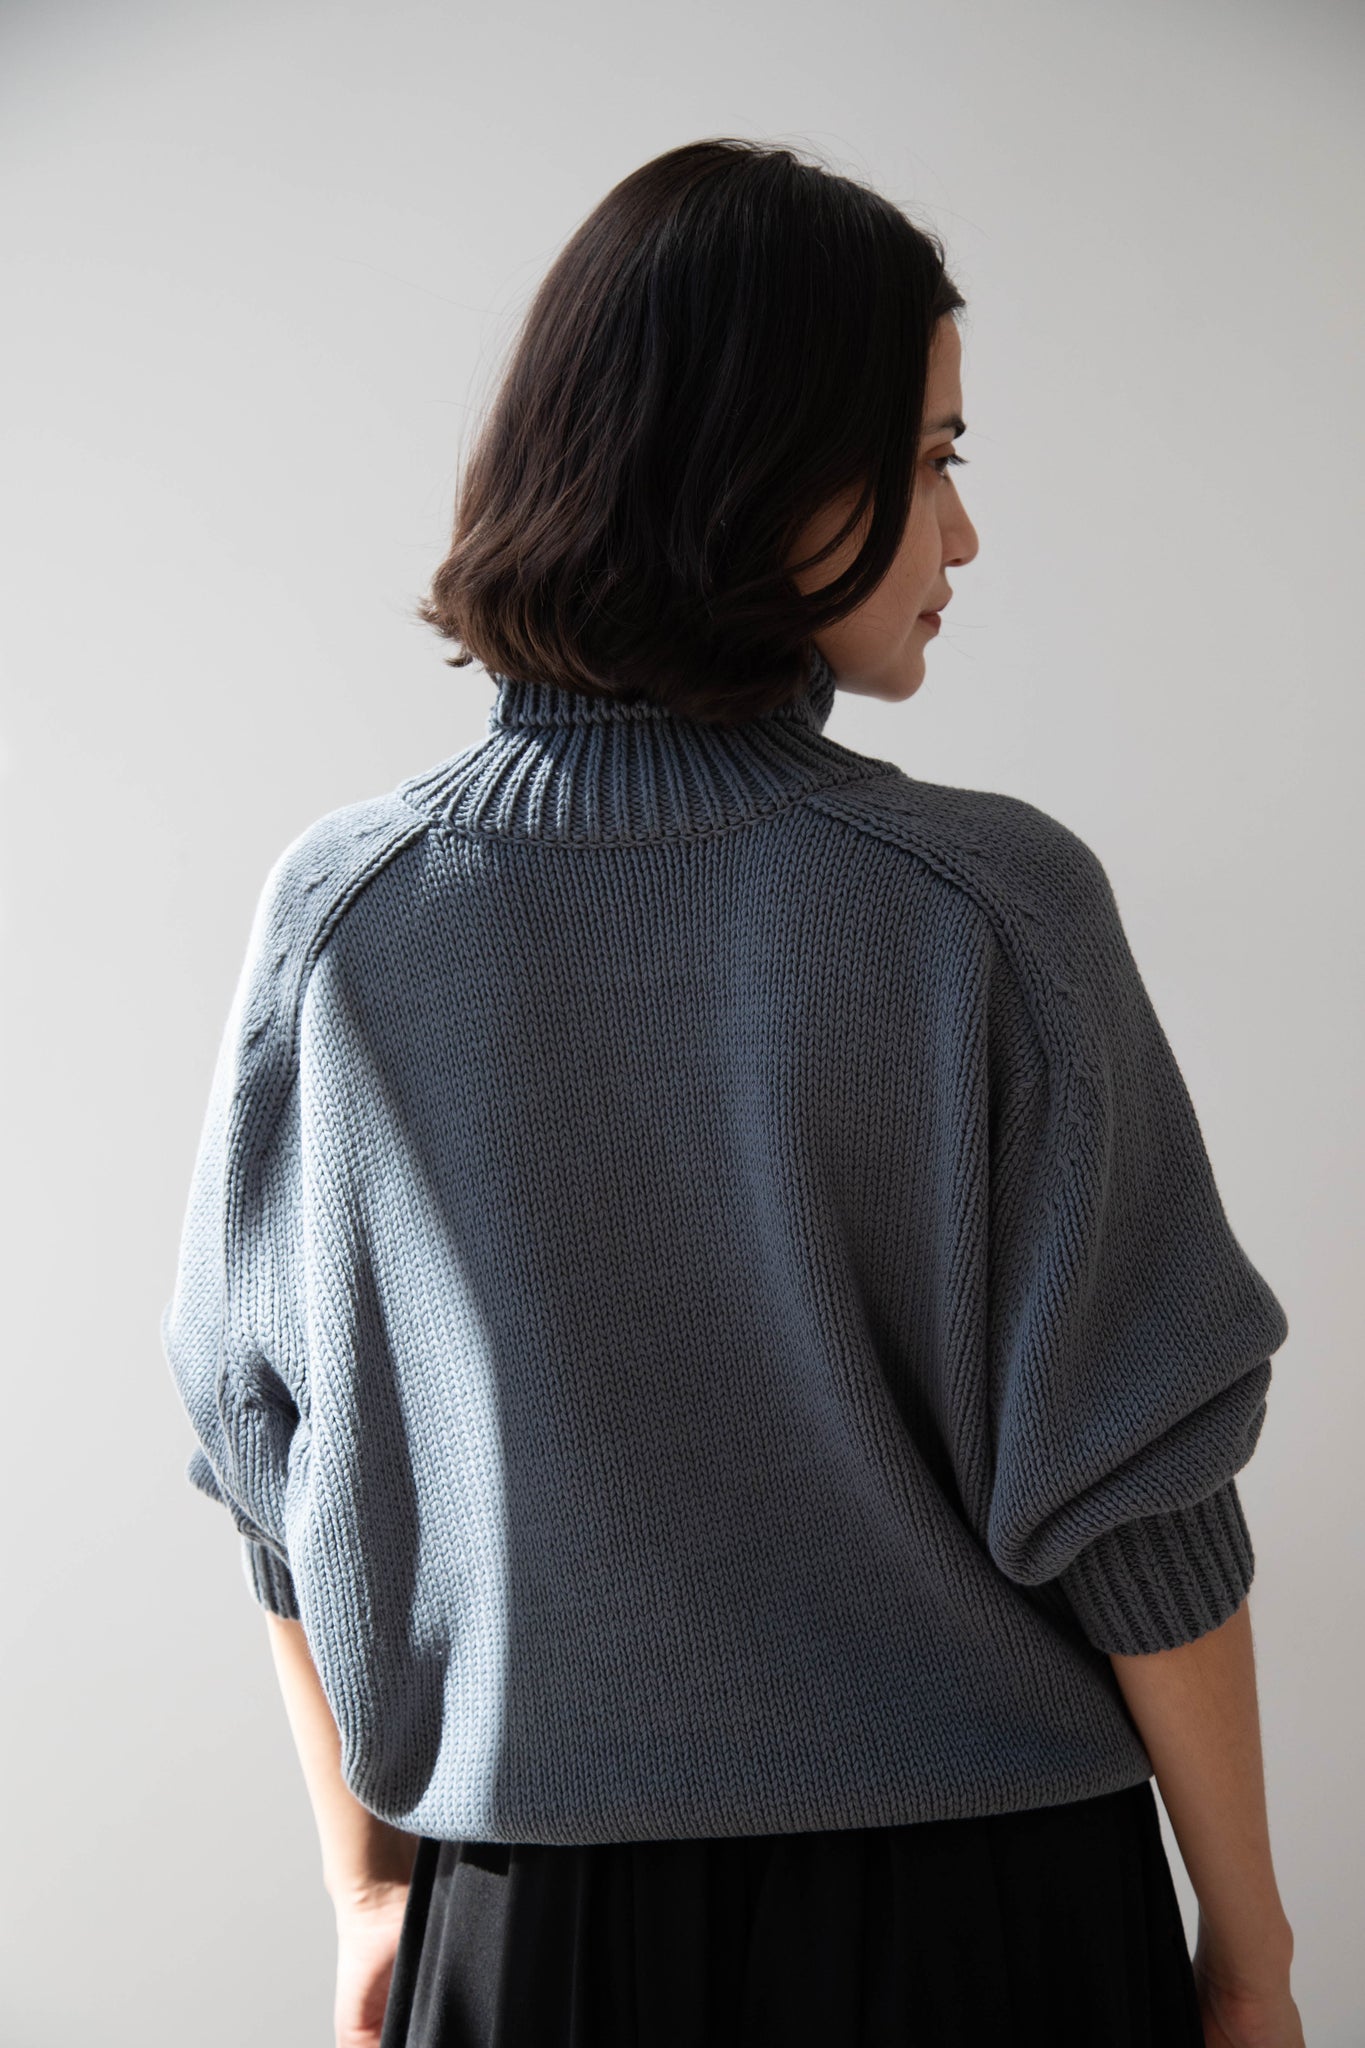 Le 17 Septembre | Blue Cotton Sweater